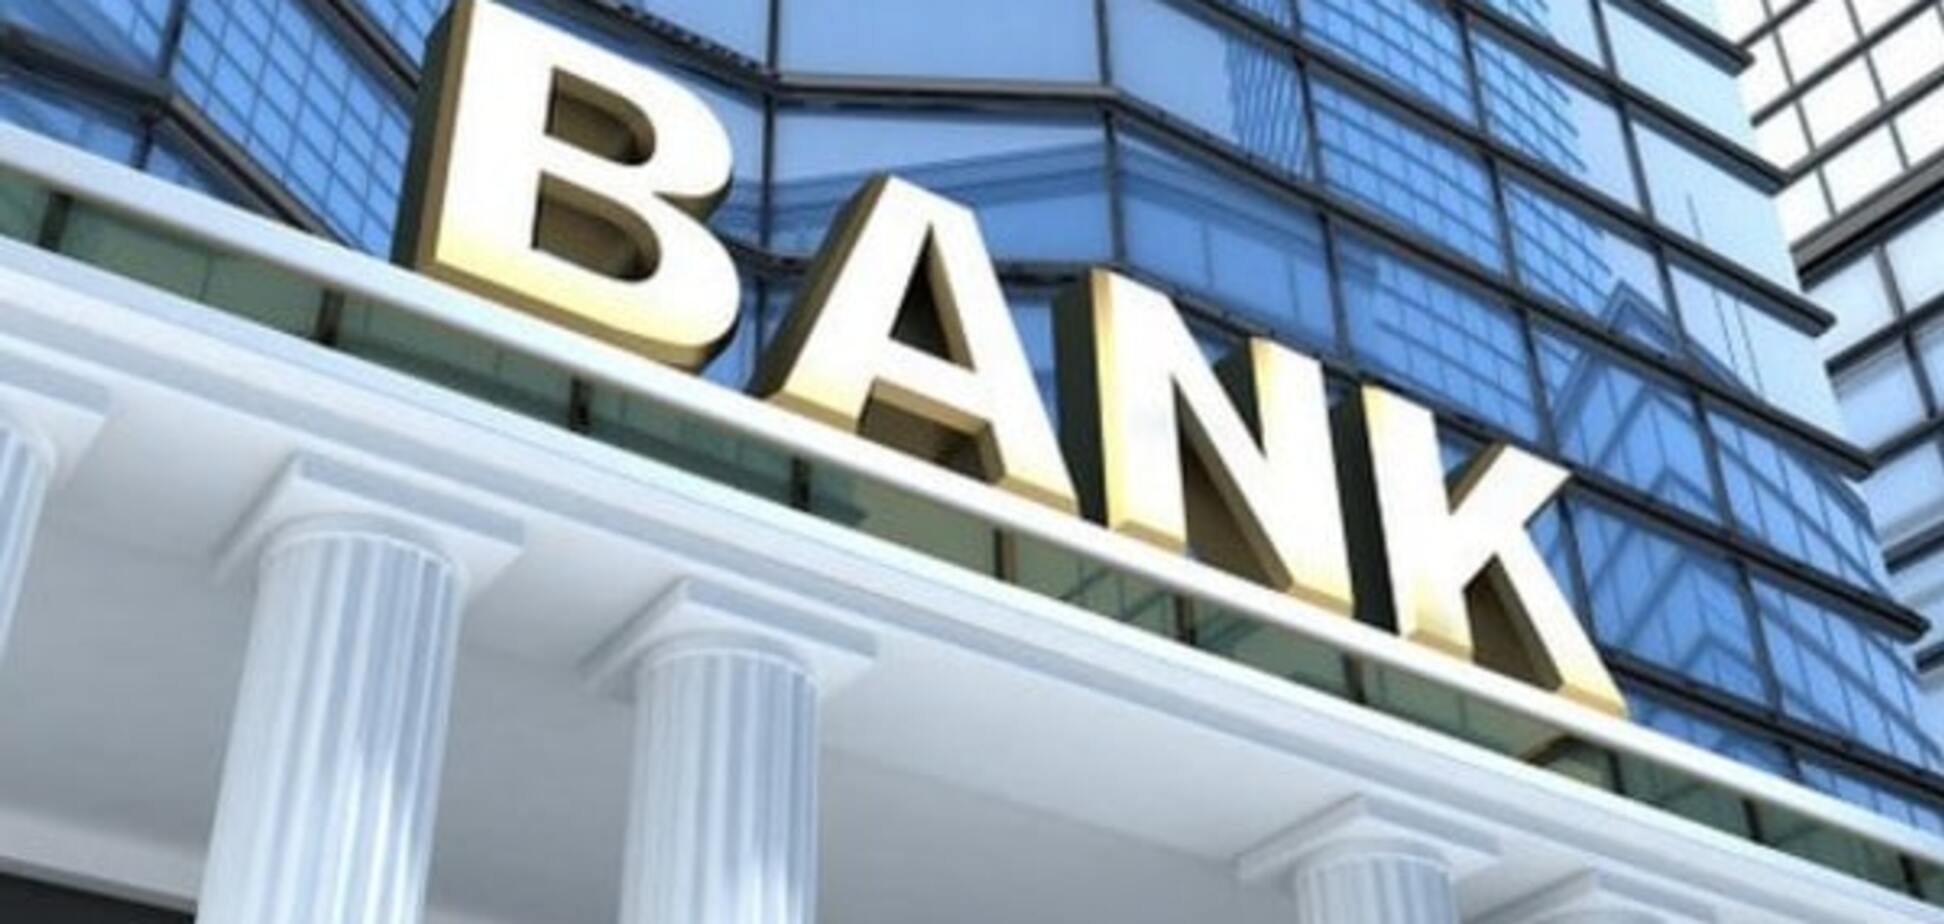 Последние из 140: украинские банки признаны самыми ненадежными в мире